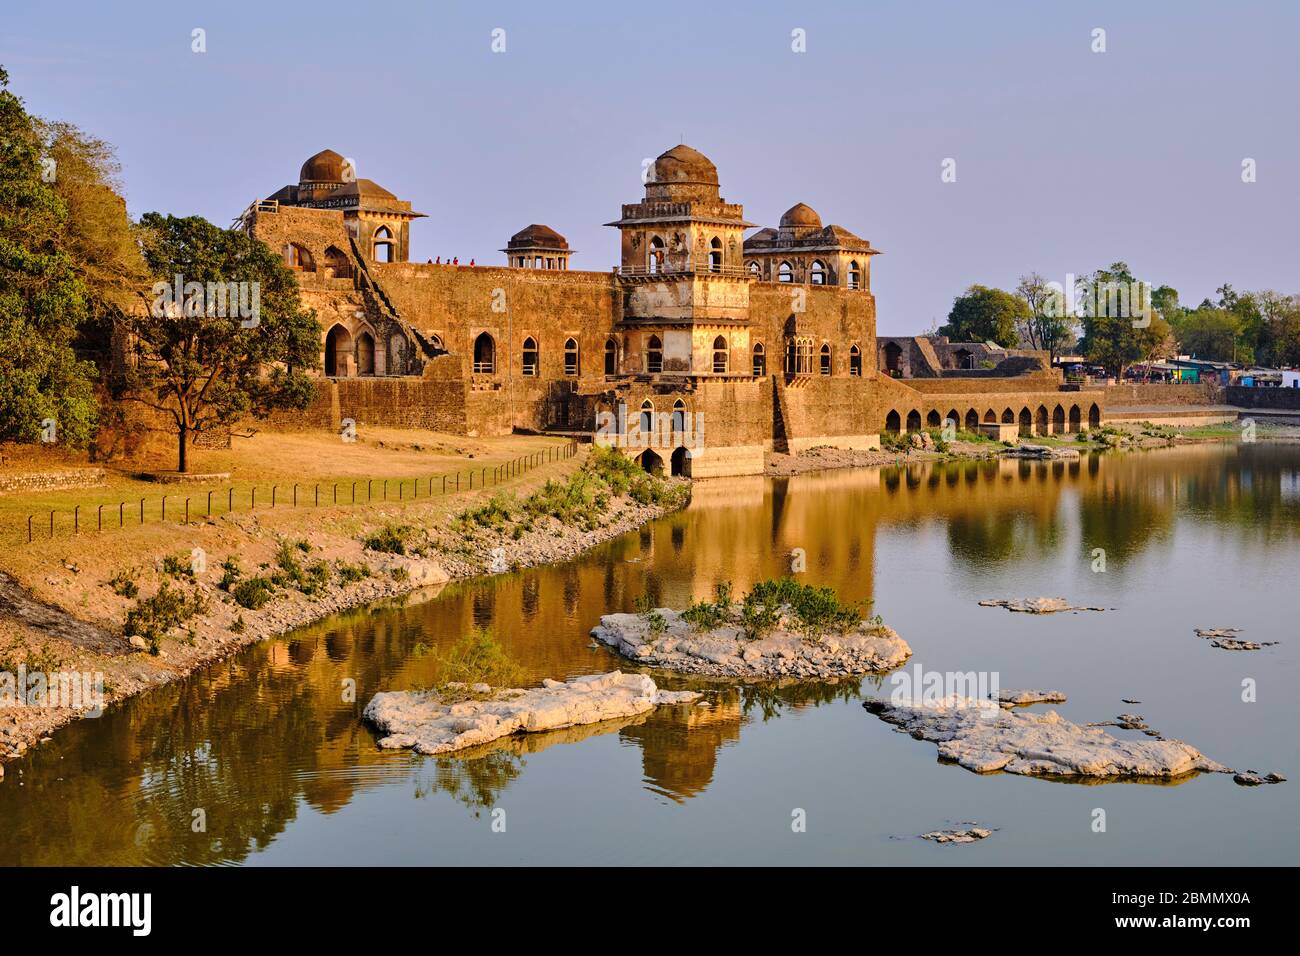 Indien, Madhya Pradesh Zustand, Mandu, 15. Jahrhundert afghanischer Stil Jahaz Mahal Palast, der von Ghyas-ud-DIN errichtet wurde Stockfoto